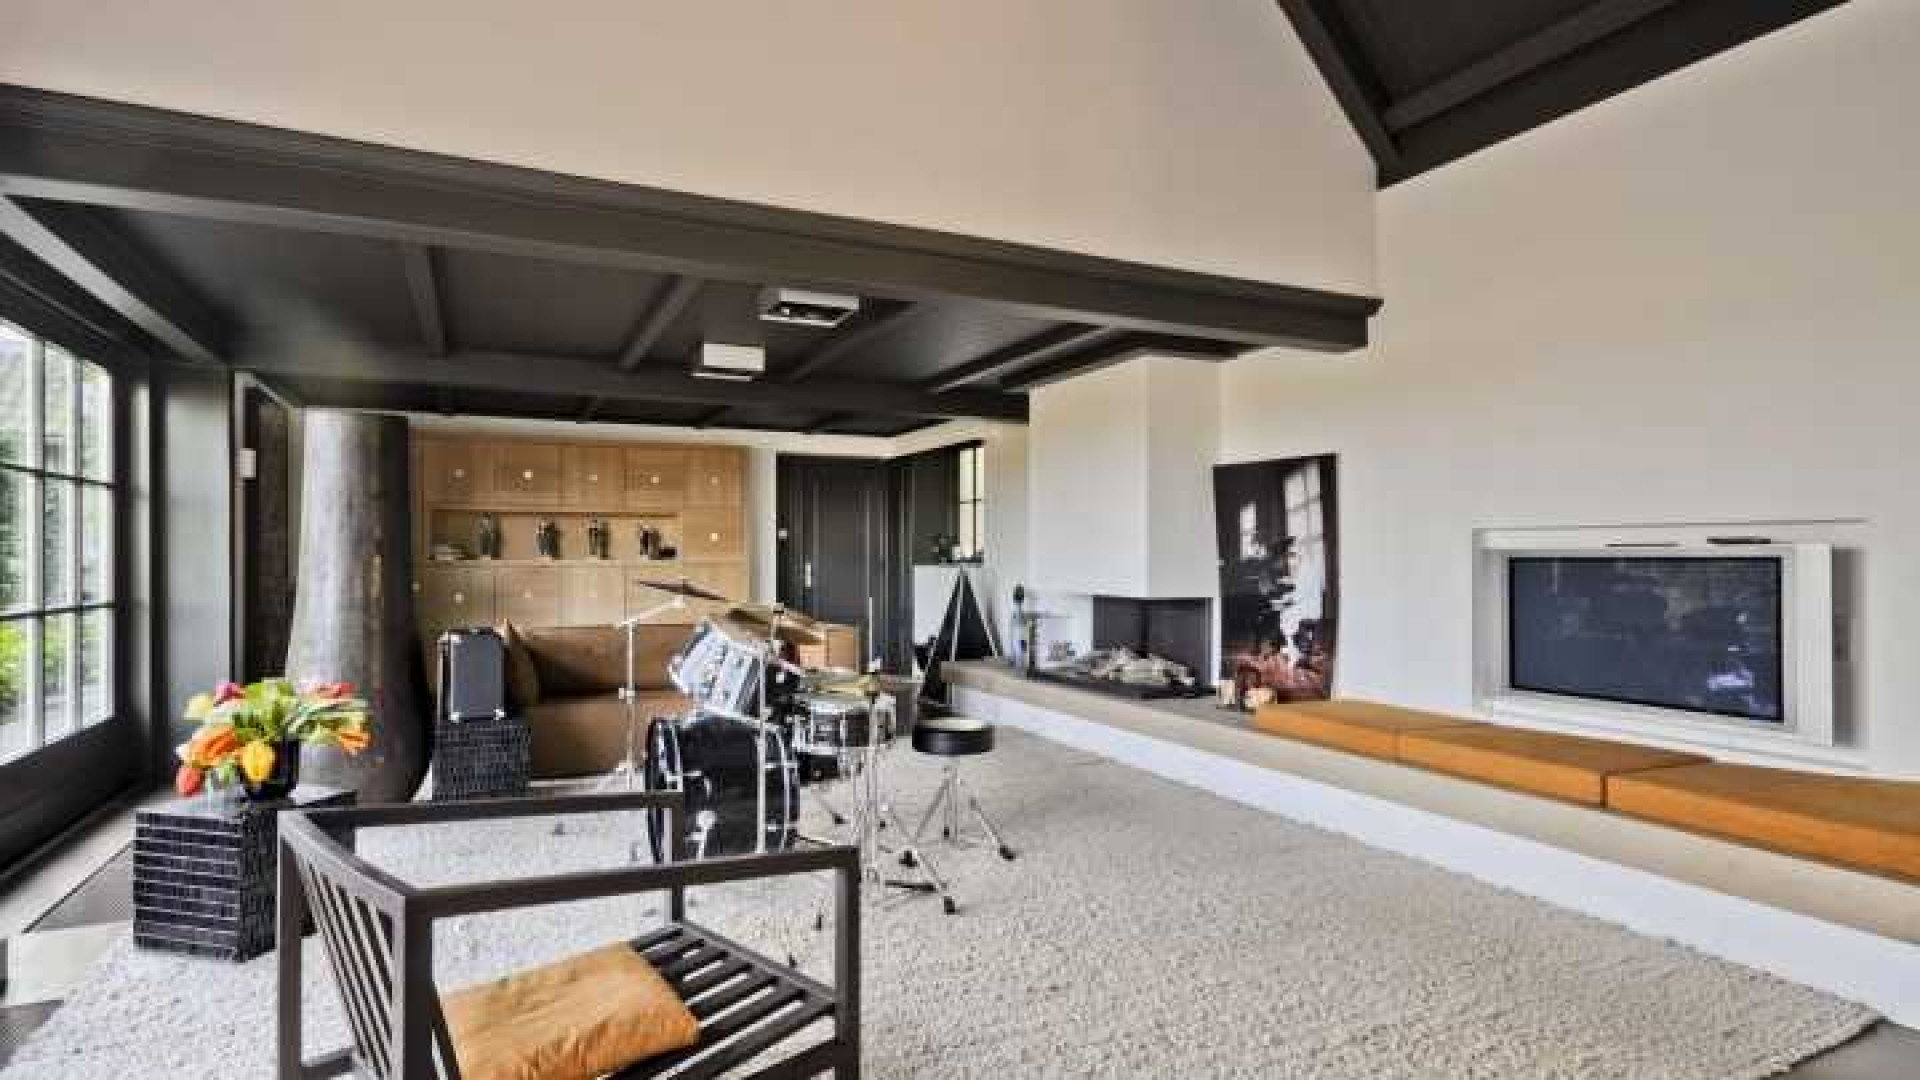 Binnenkijken in het totaal door ontwerper Piet Boon gerestylde huis van Henny Huisman. Zie foto's